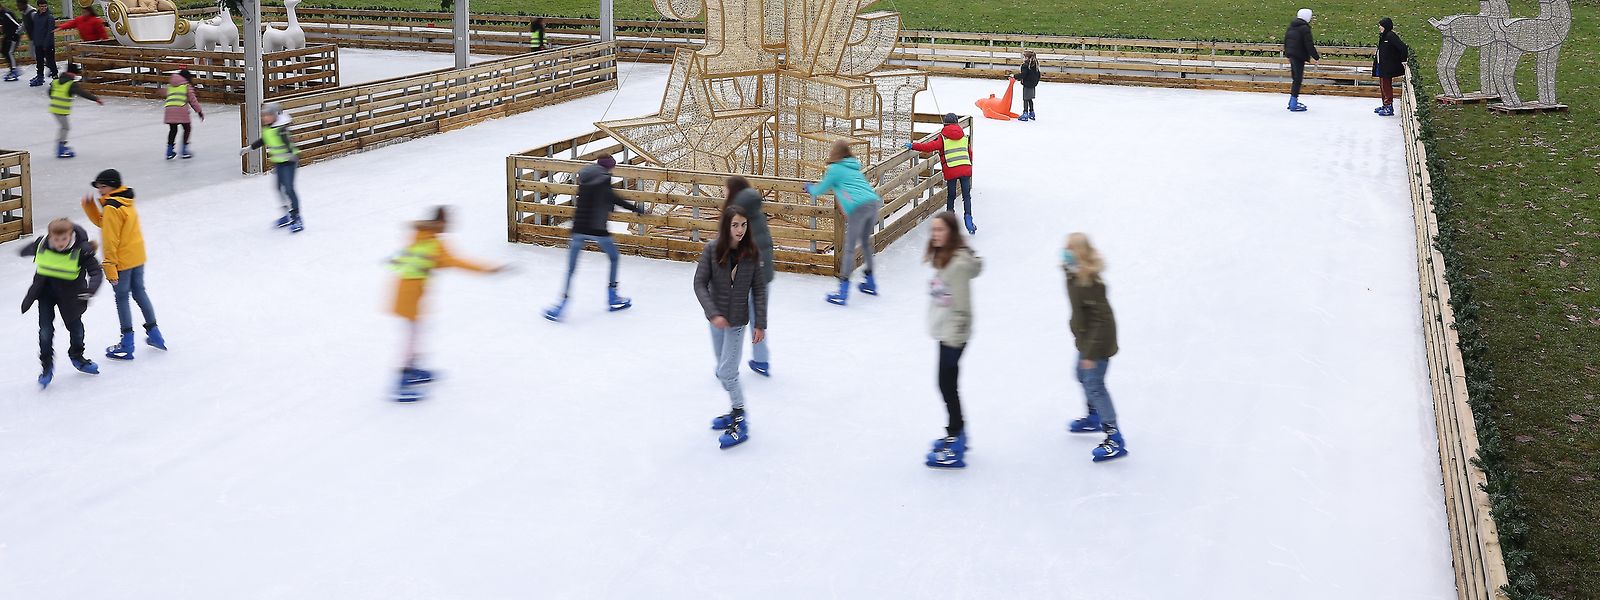 O ringue de patinagem do parque da capital não será assim neste inverno.